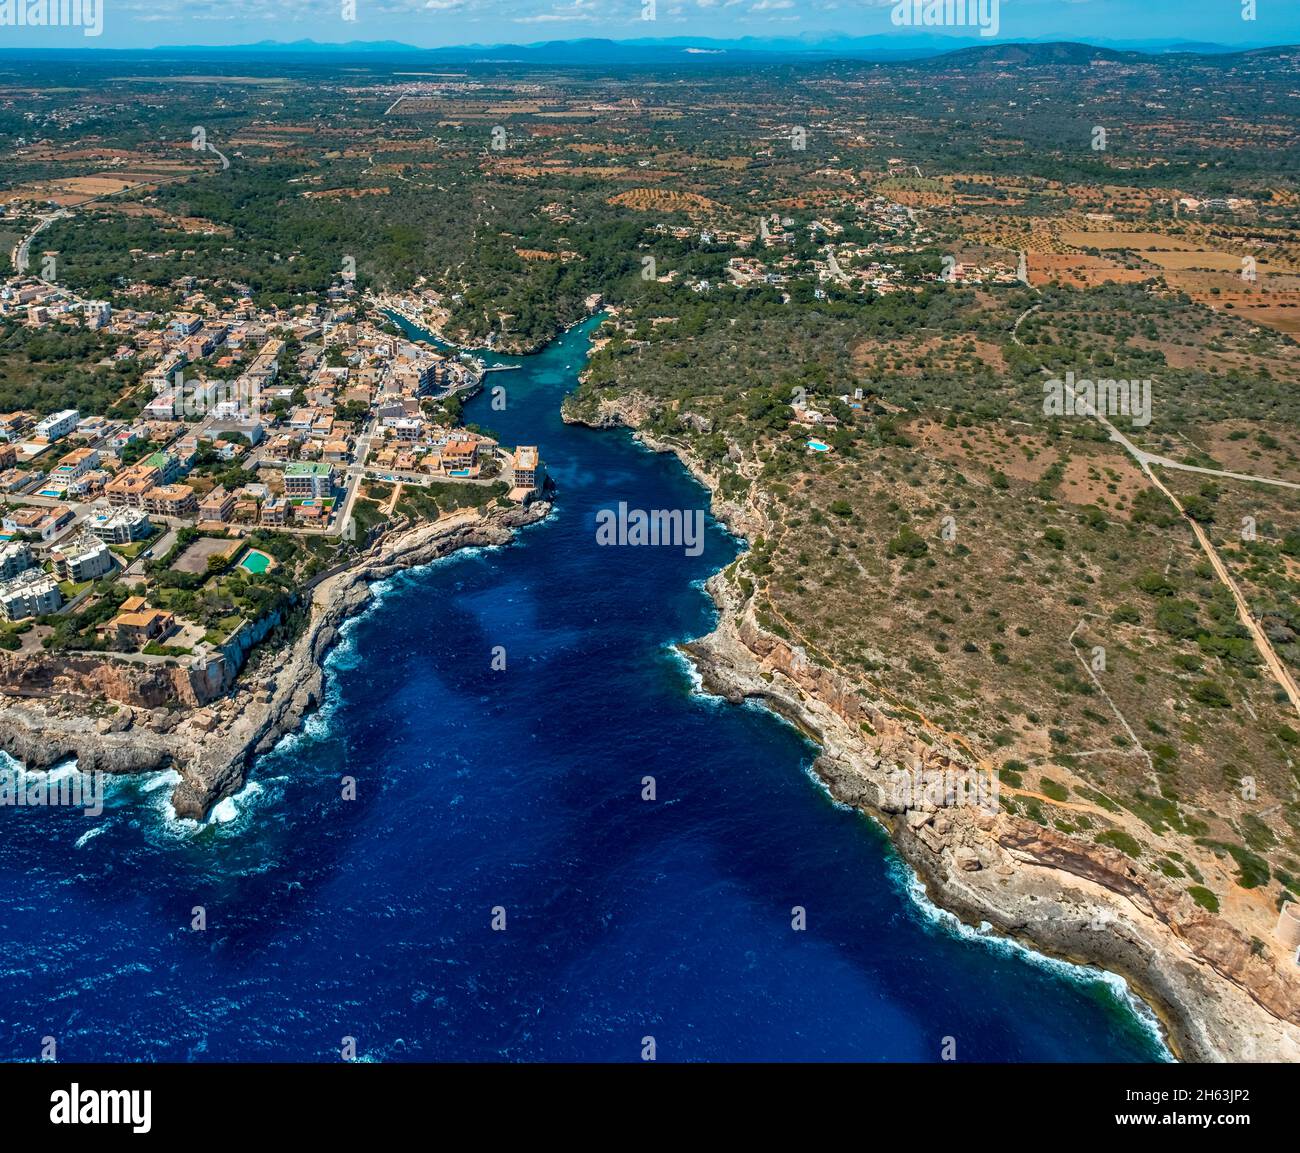 vue aérienne,cala figuera,port,port de pêche,santanyí,europe,iles baléares,espagne Banque D'Images